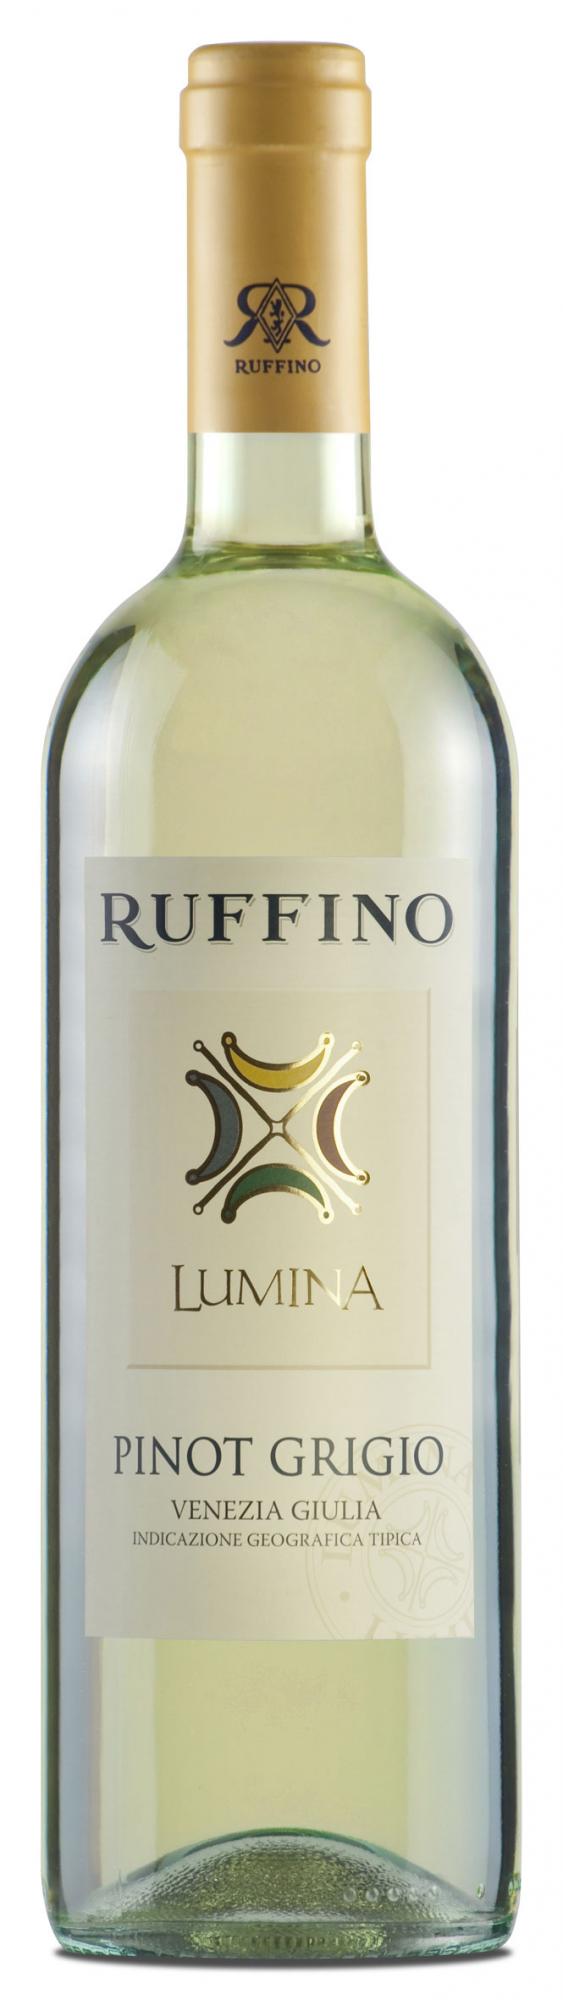 Vang Ý Ruffino Lumina Pinot Grigio Venezia Giulia